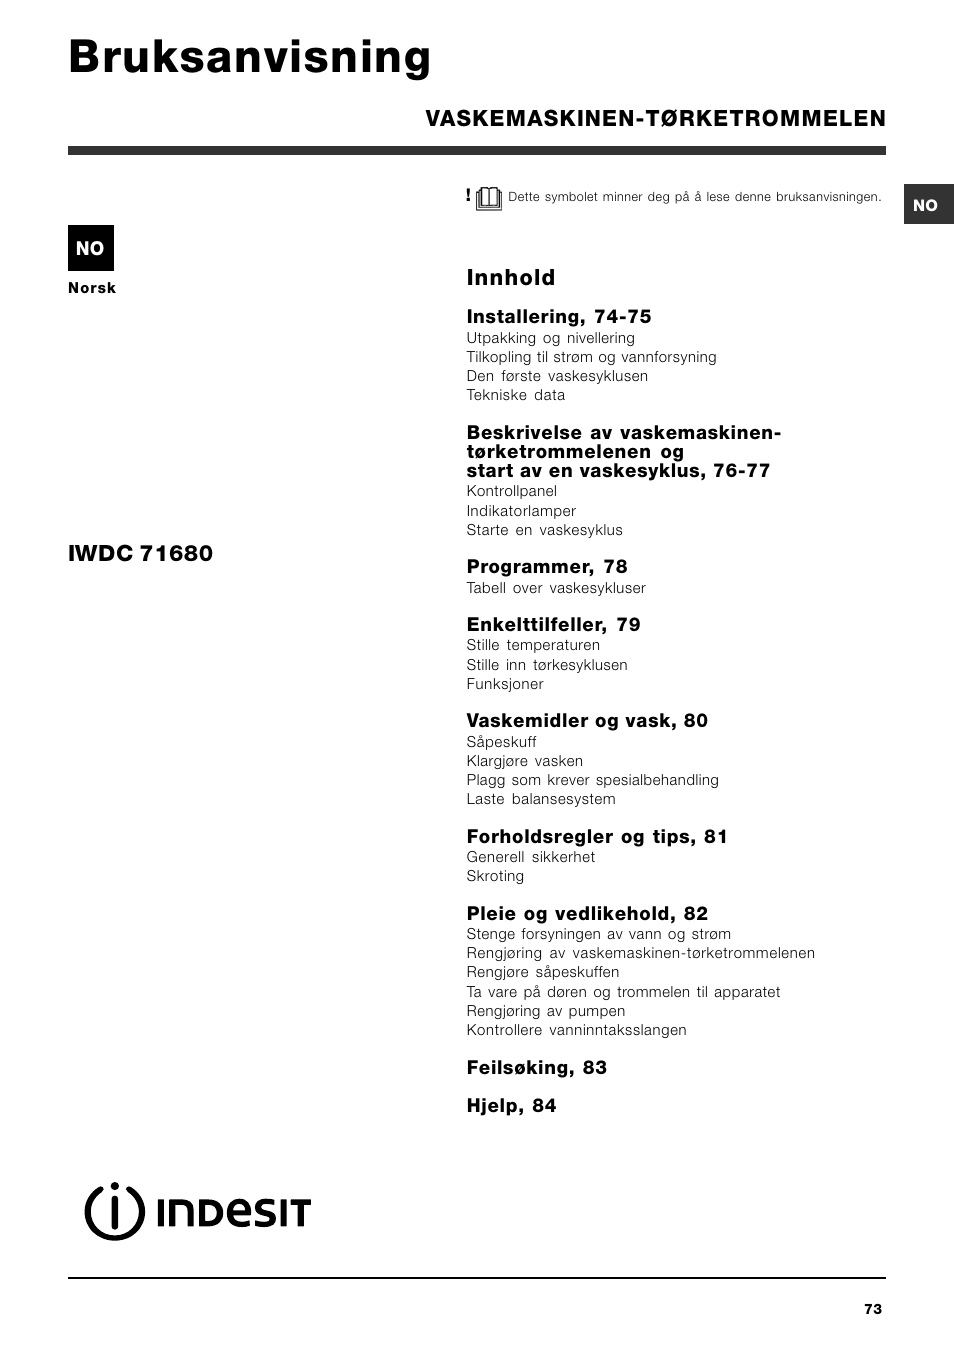 Bruksanvisning, Innhold, Vaskemaskinen-tørketrommelen | Indesit IWDC 71680  User Manual | Page 73 / 84